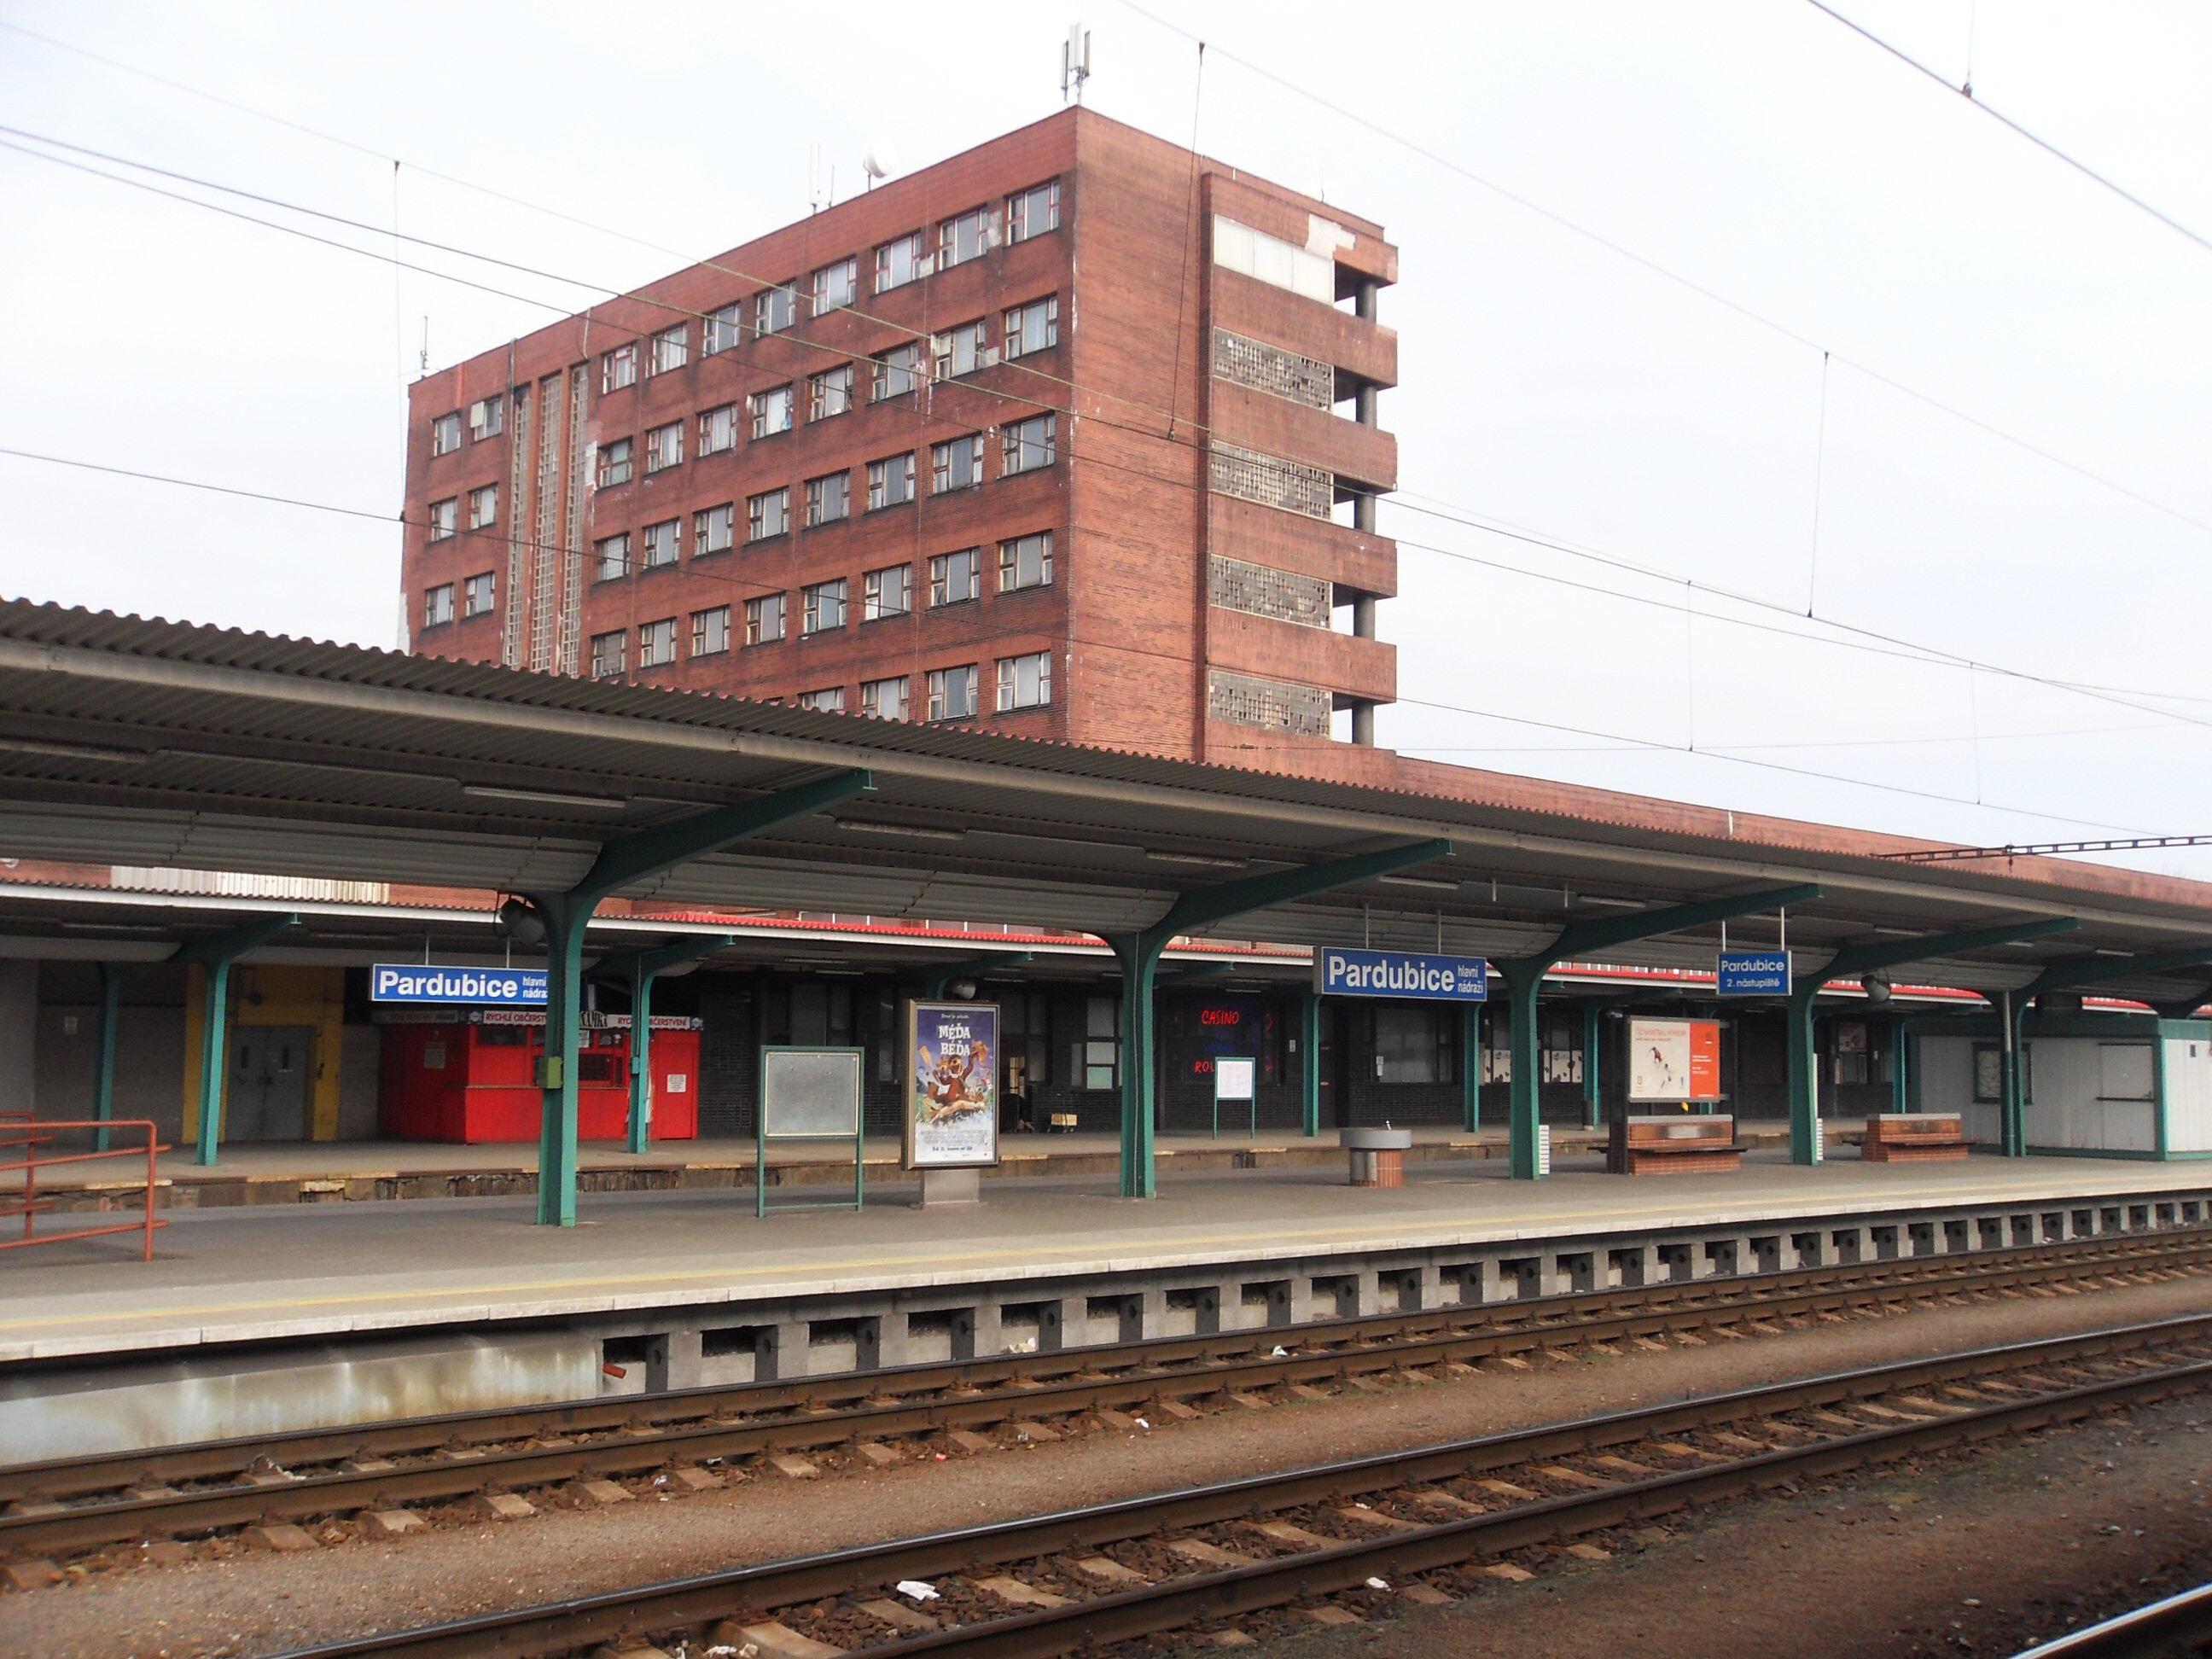 Stát hodlá modernizovat železniční uzel Pardubice